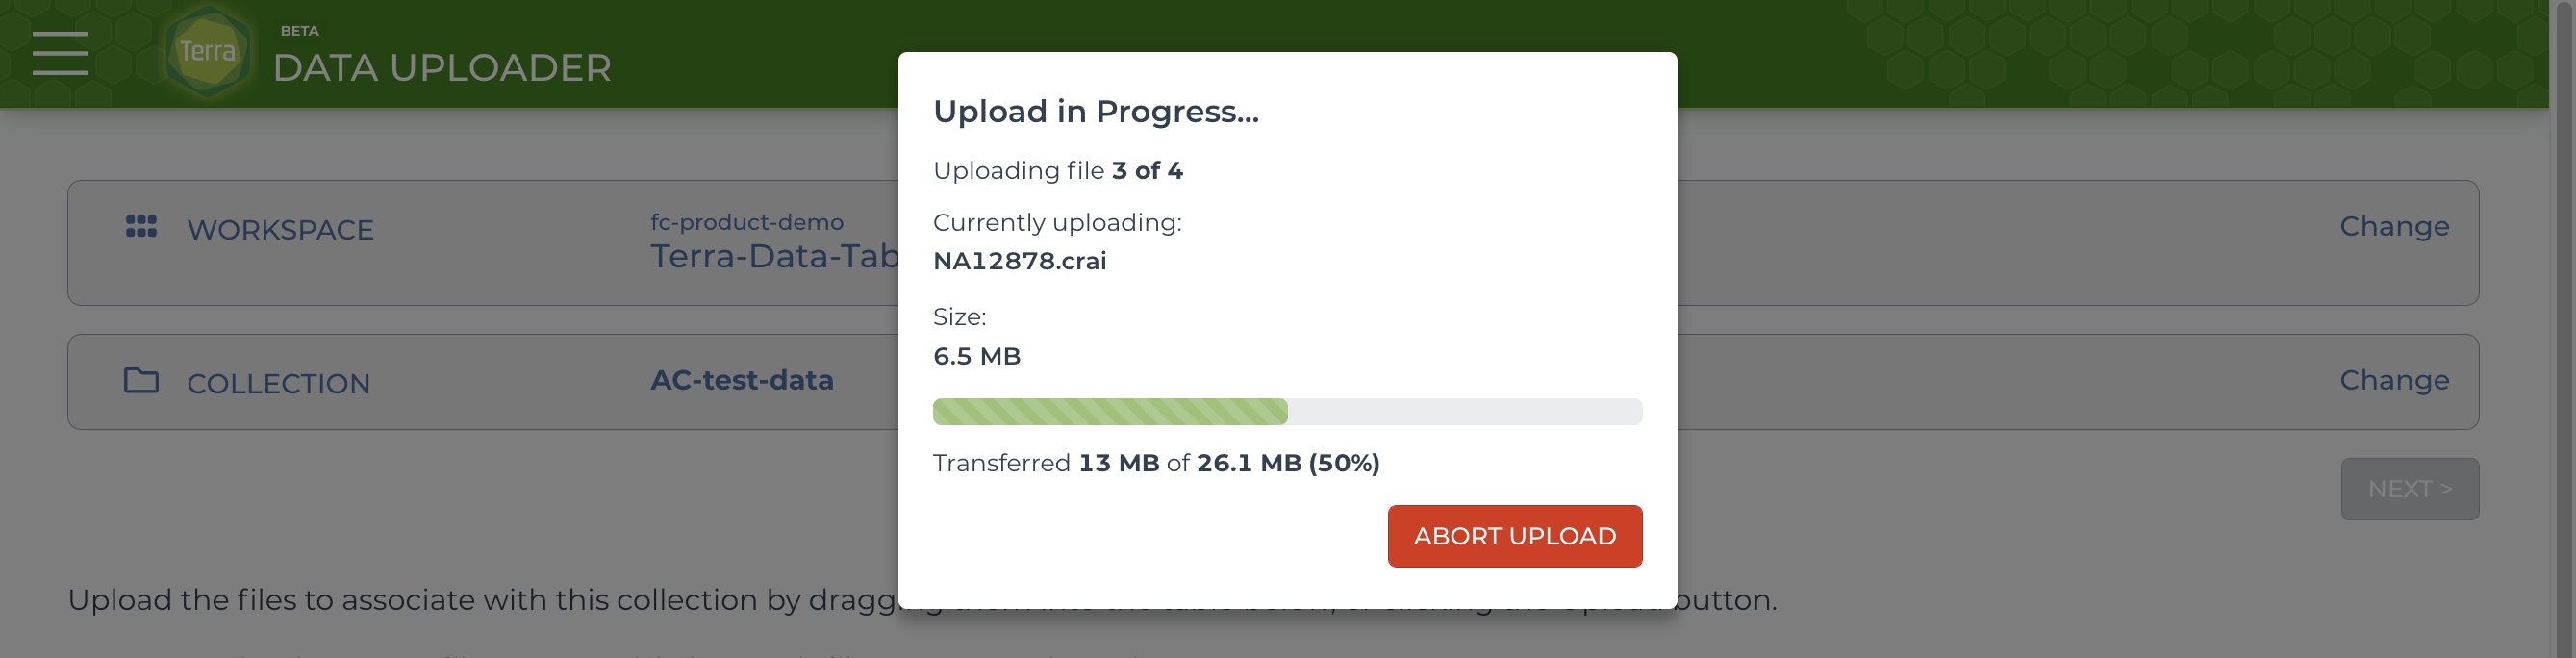 Data-uploader_Upload-progress-bar_Screen_shot.png